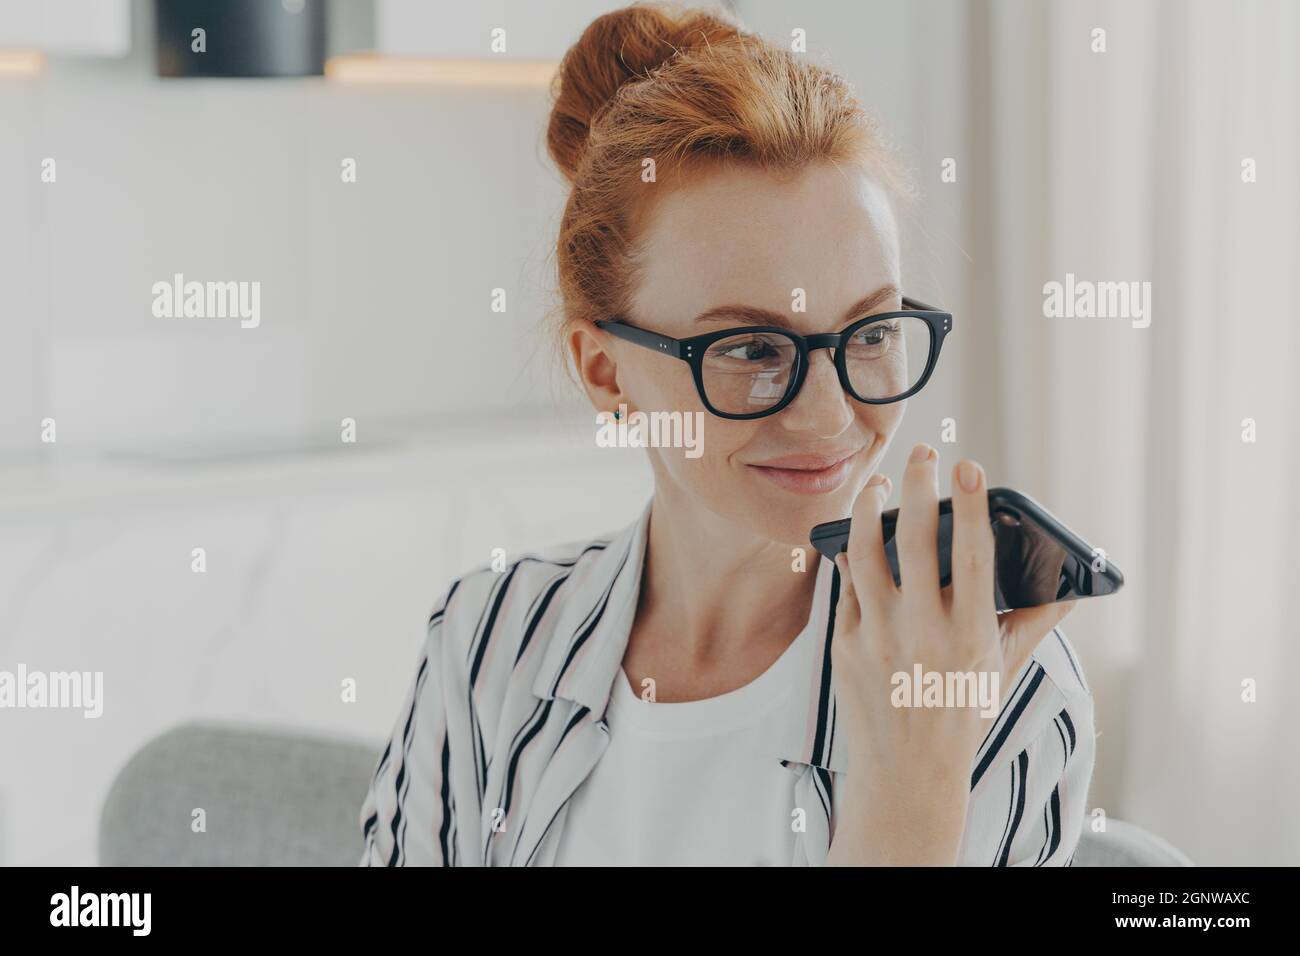 Horizontale Aufnahme von Ingwer Frau verwendet Voice Assistant auf dem Smartphone macht Sprachanruf Stockfoto